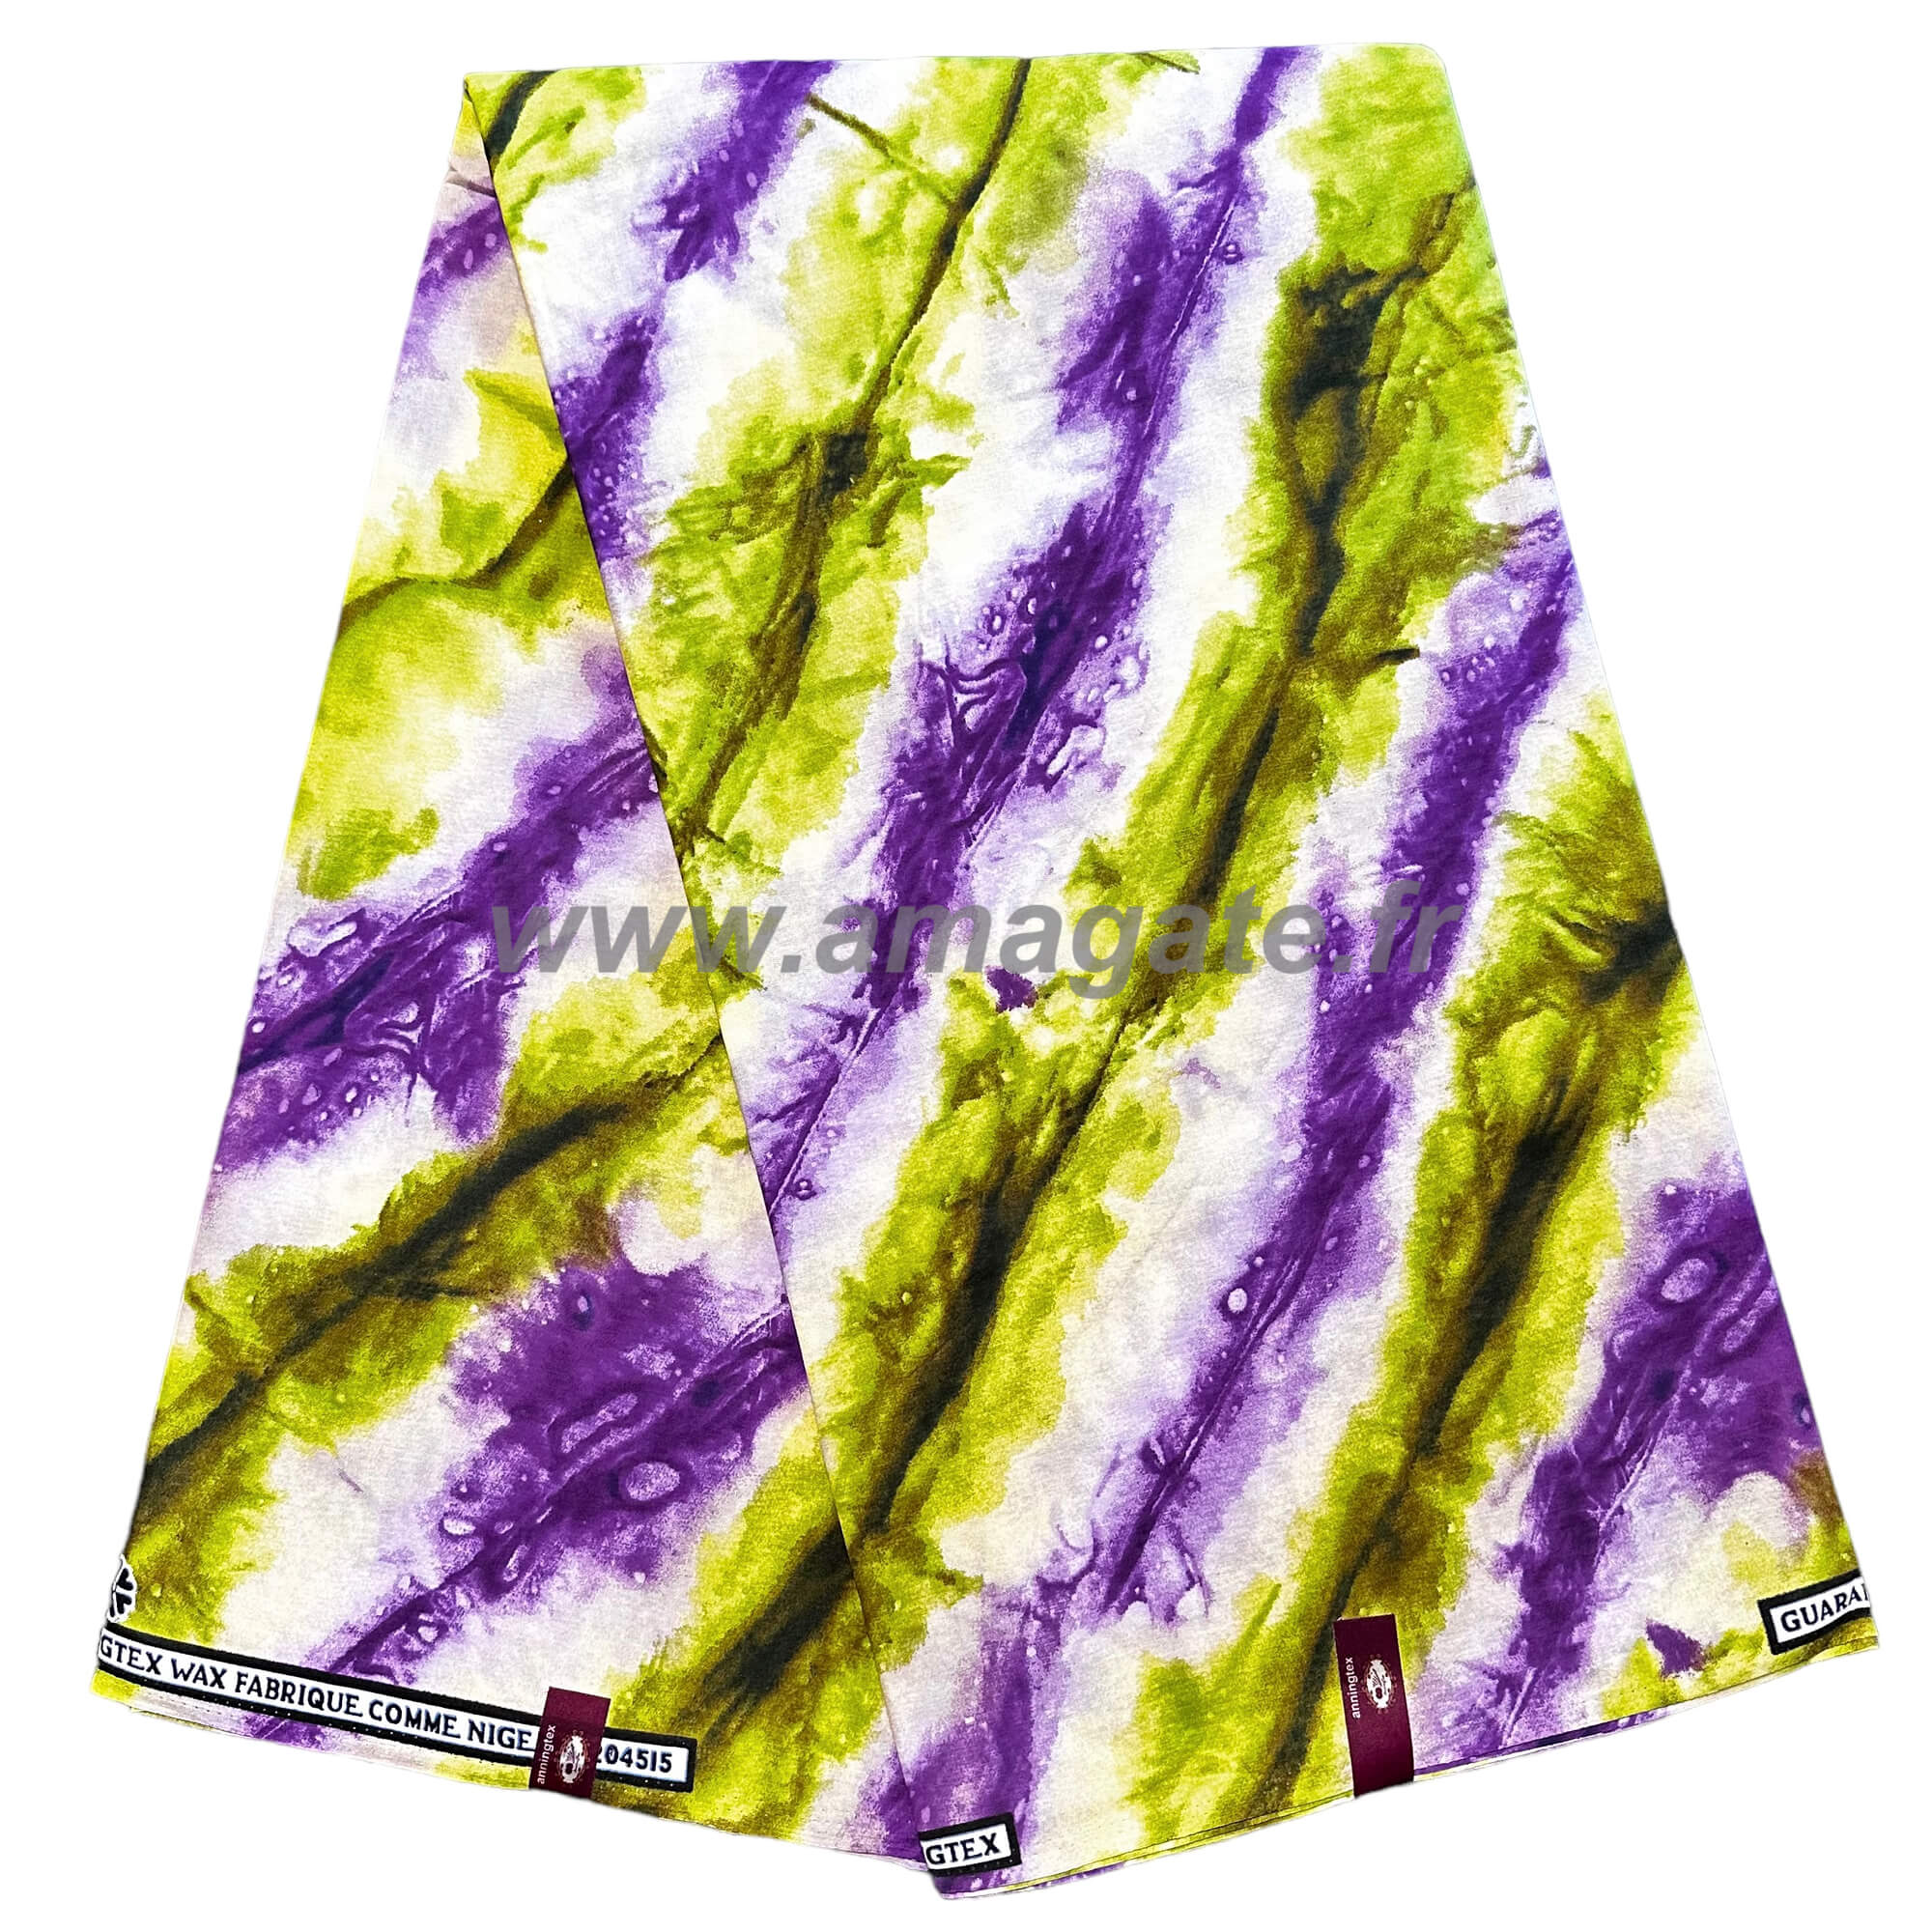 Tissu - Wax 100% coton - Graphiques - Vert / Violet / Marron